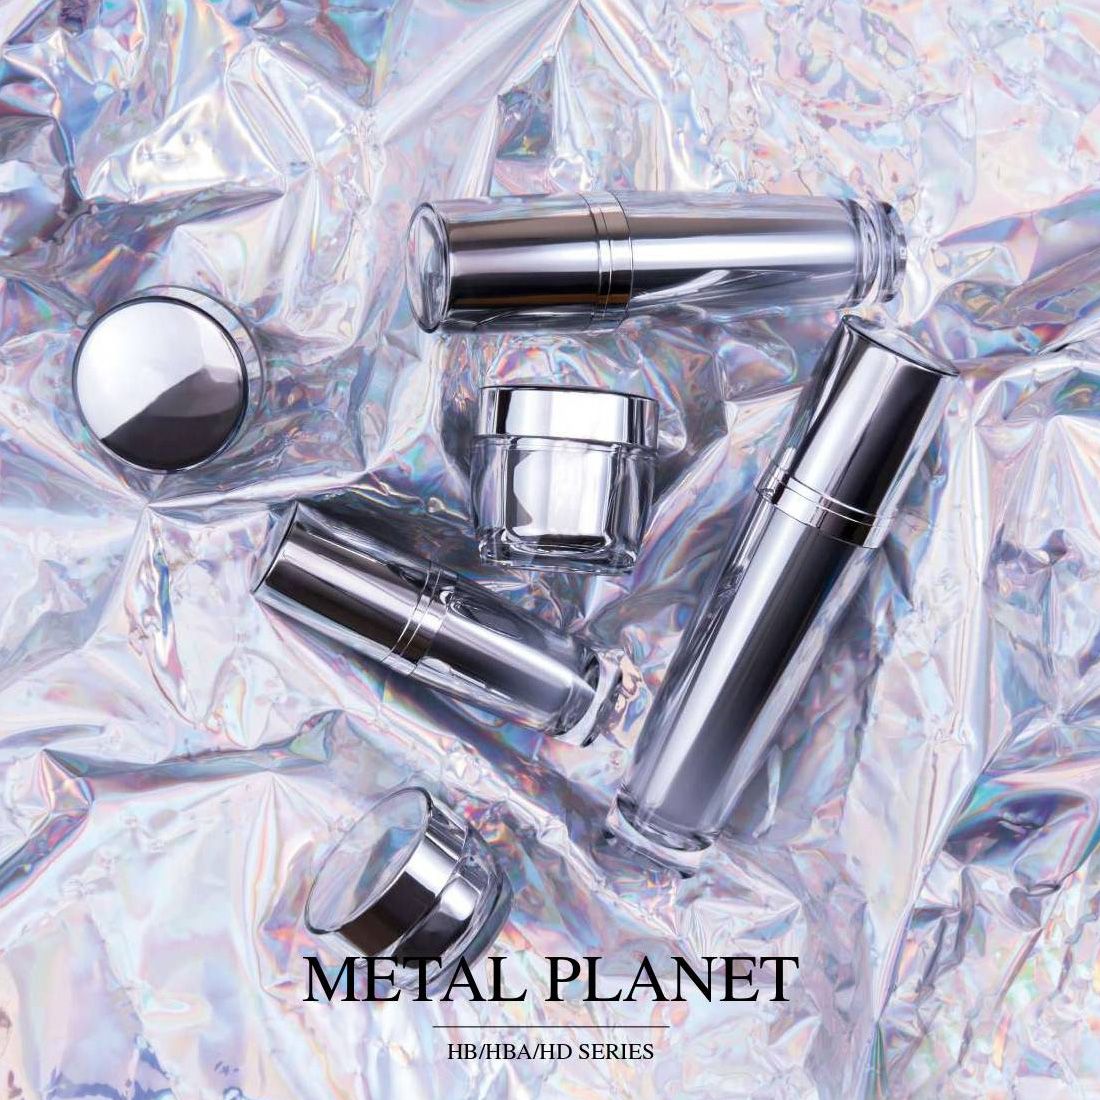 Metal Planet (акриловая роскошная упаковка для косметики и ухода за кожей) Серия HB/HBA/HD